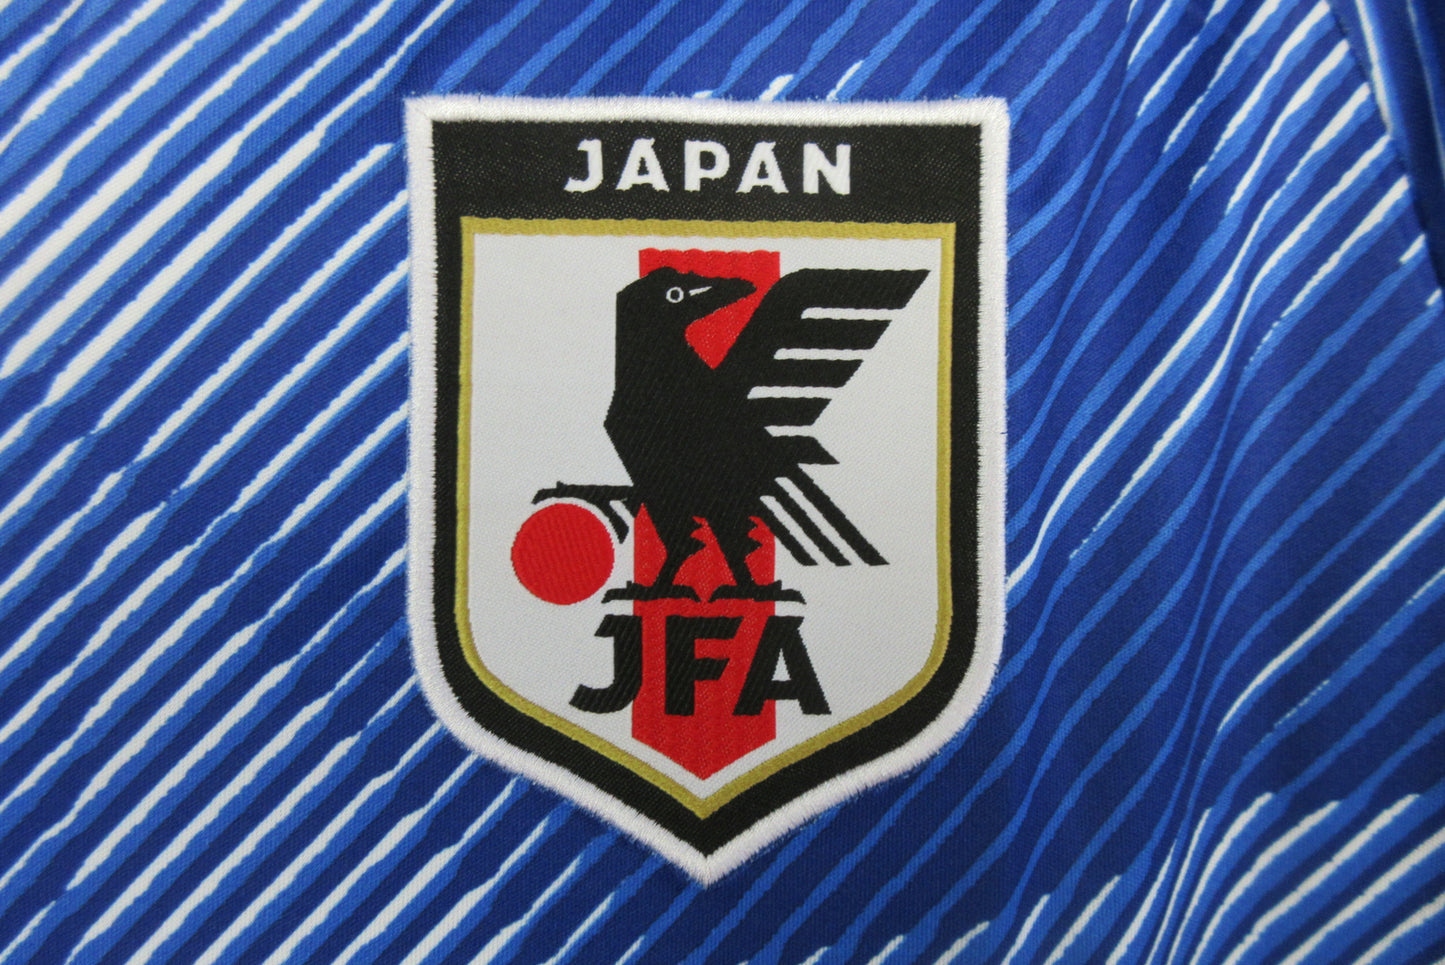 Japan 22/23 Home Kit - Fan Version - Logo